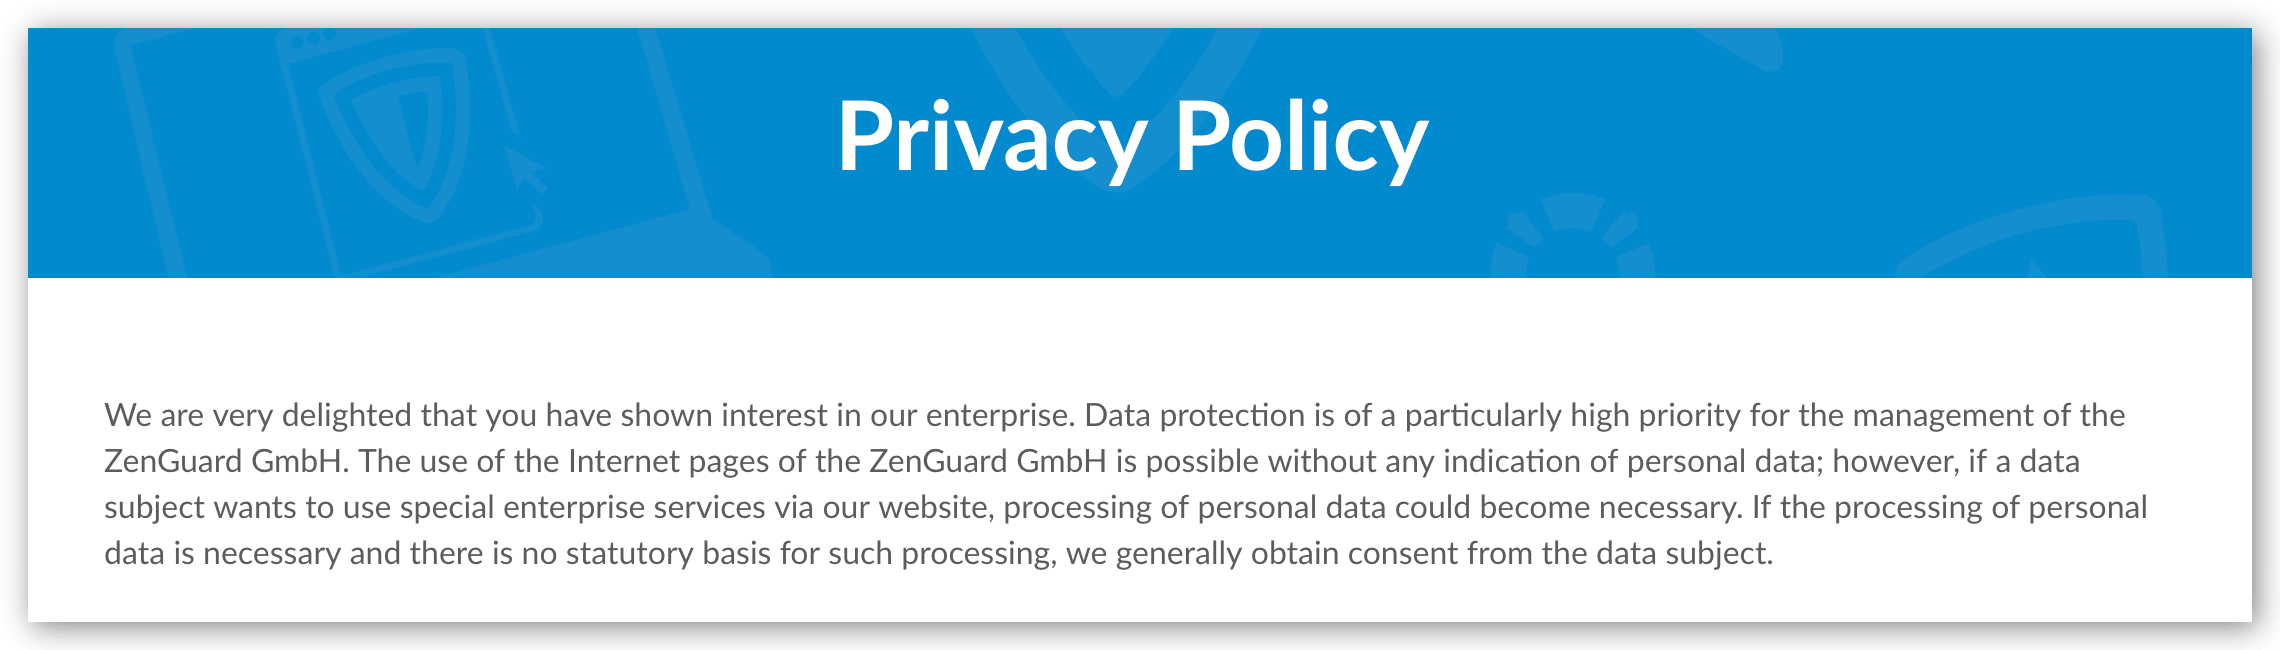 Tangkapan skrin mengenai Dasar Privasi ZenMate